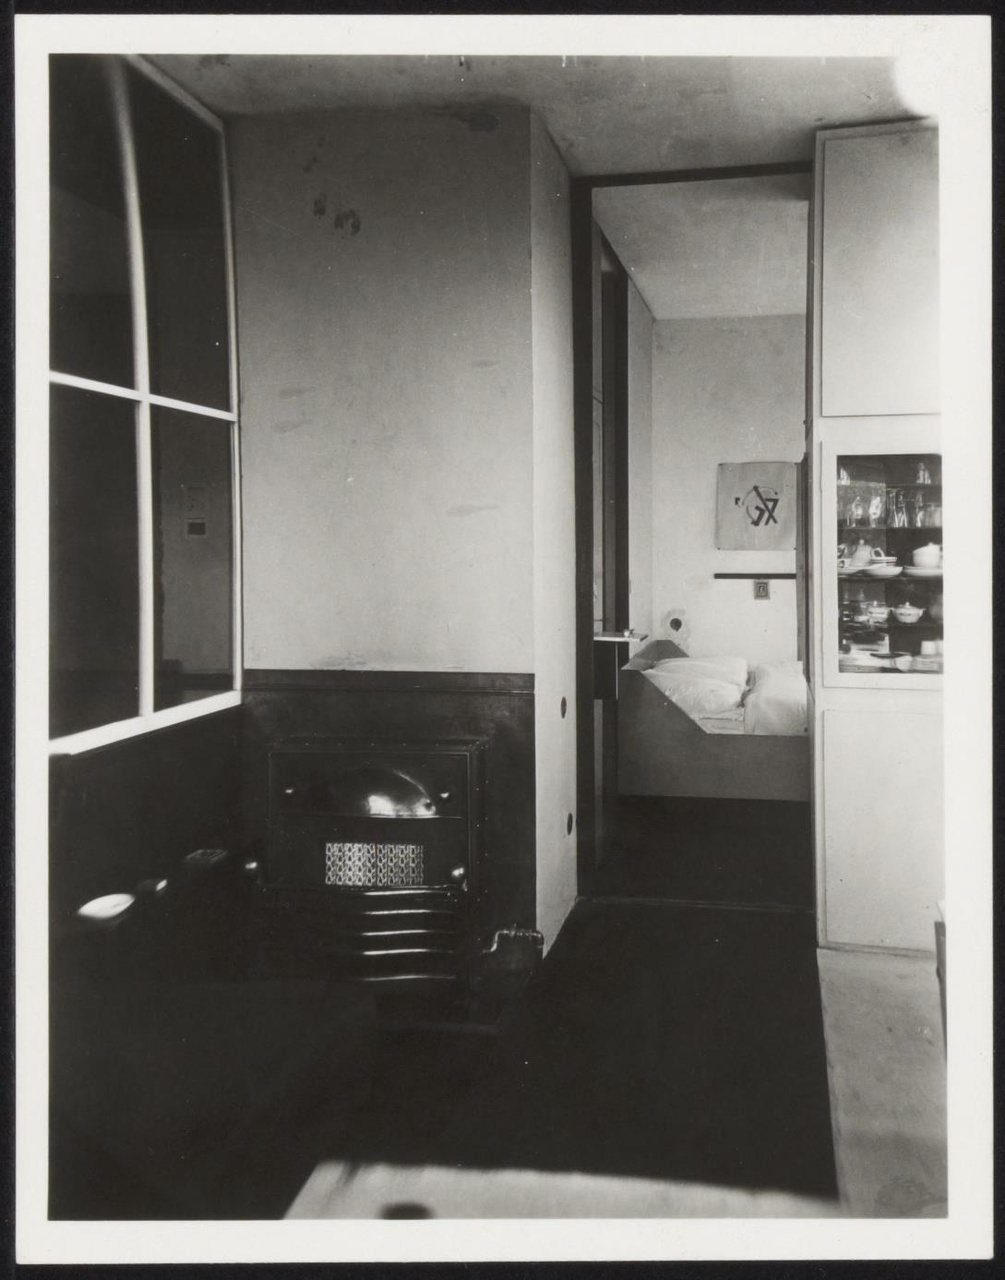 Afbeelding van Rietveld Schröderhuis - interieur boven - kachel en slaapkamertje vanuit zithoek